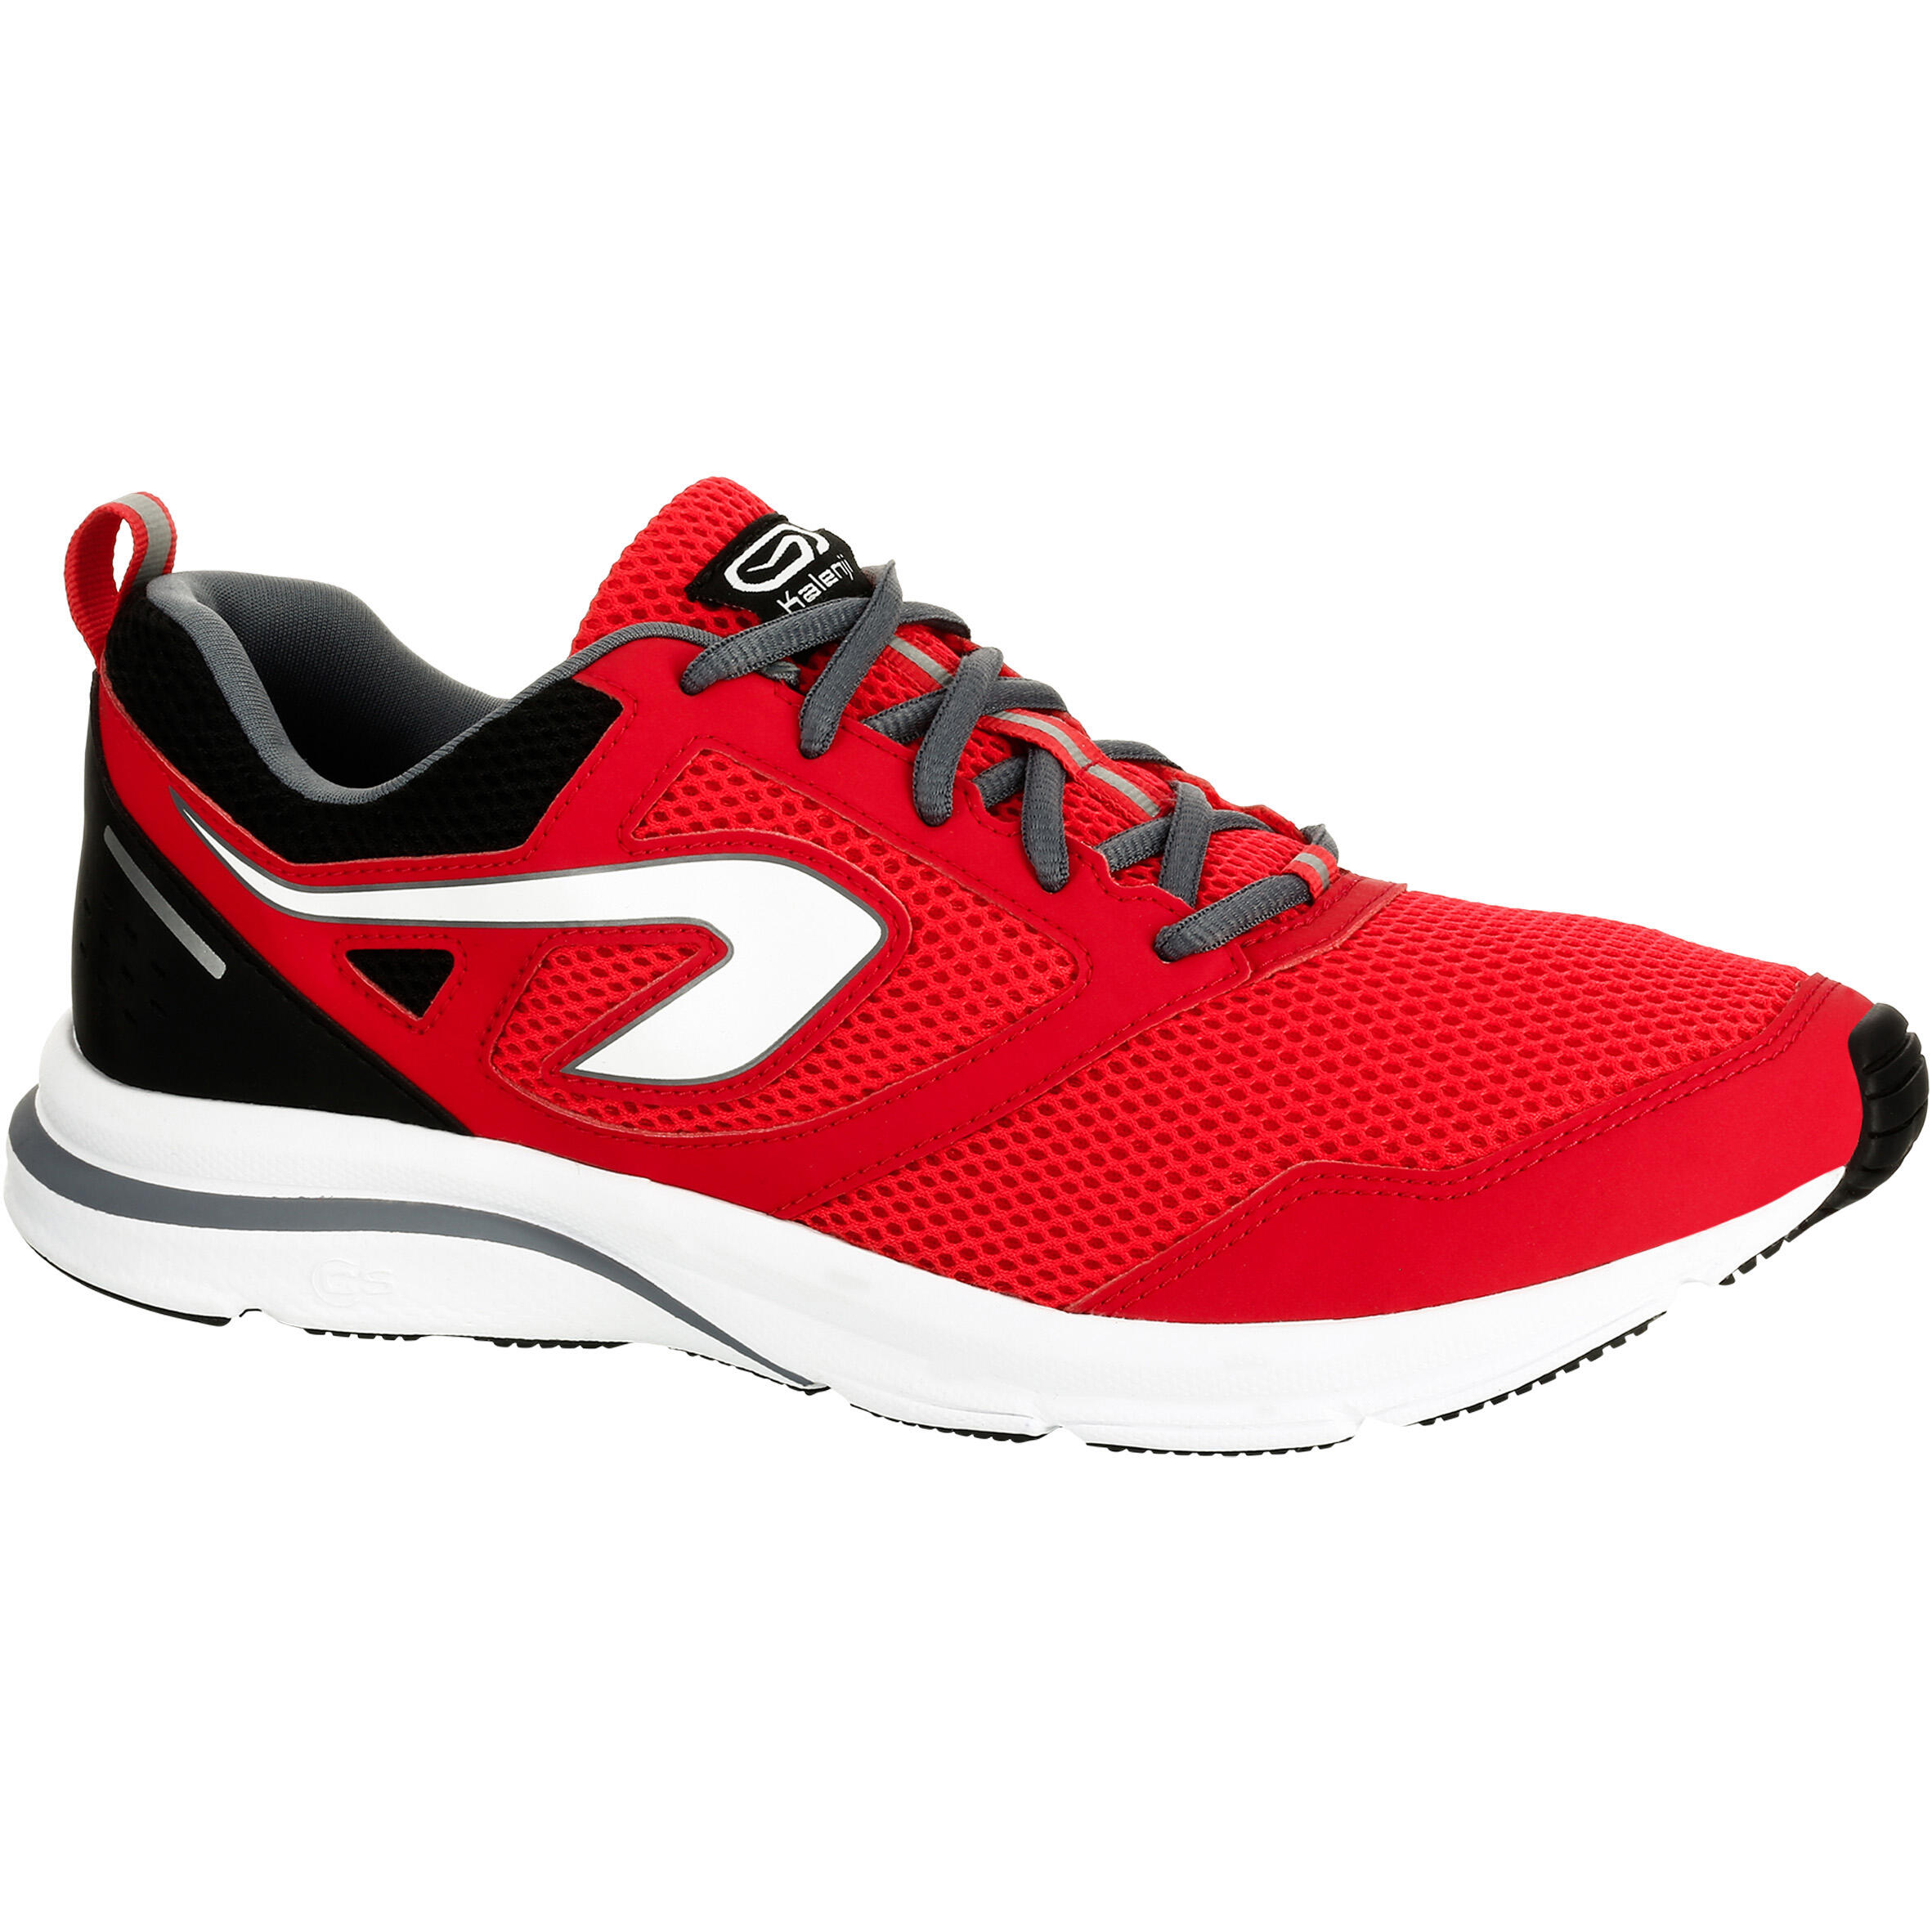 kalenji running shoes review 217